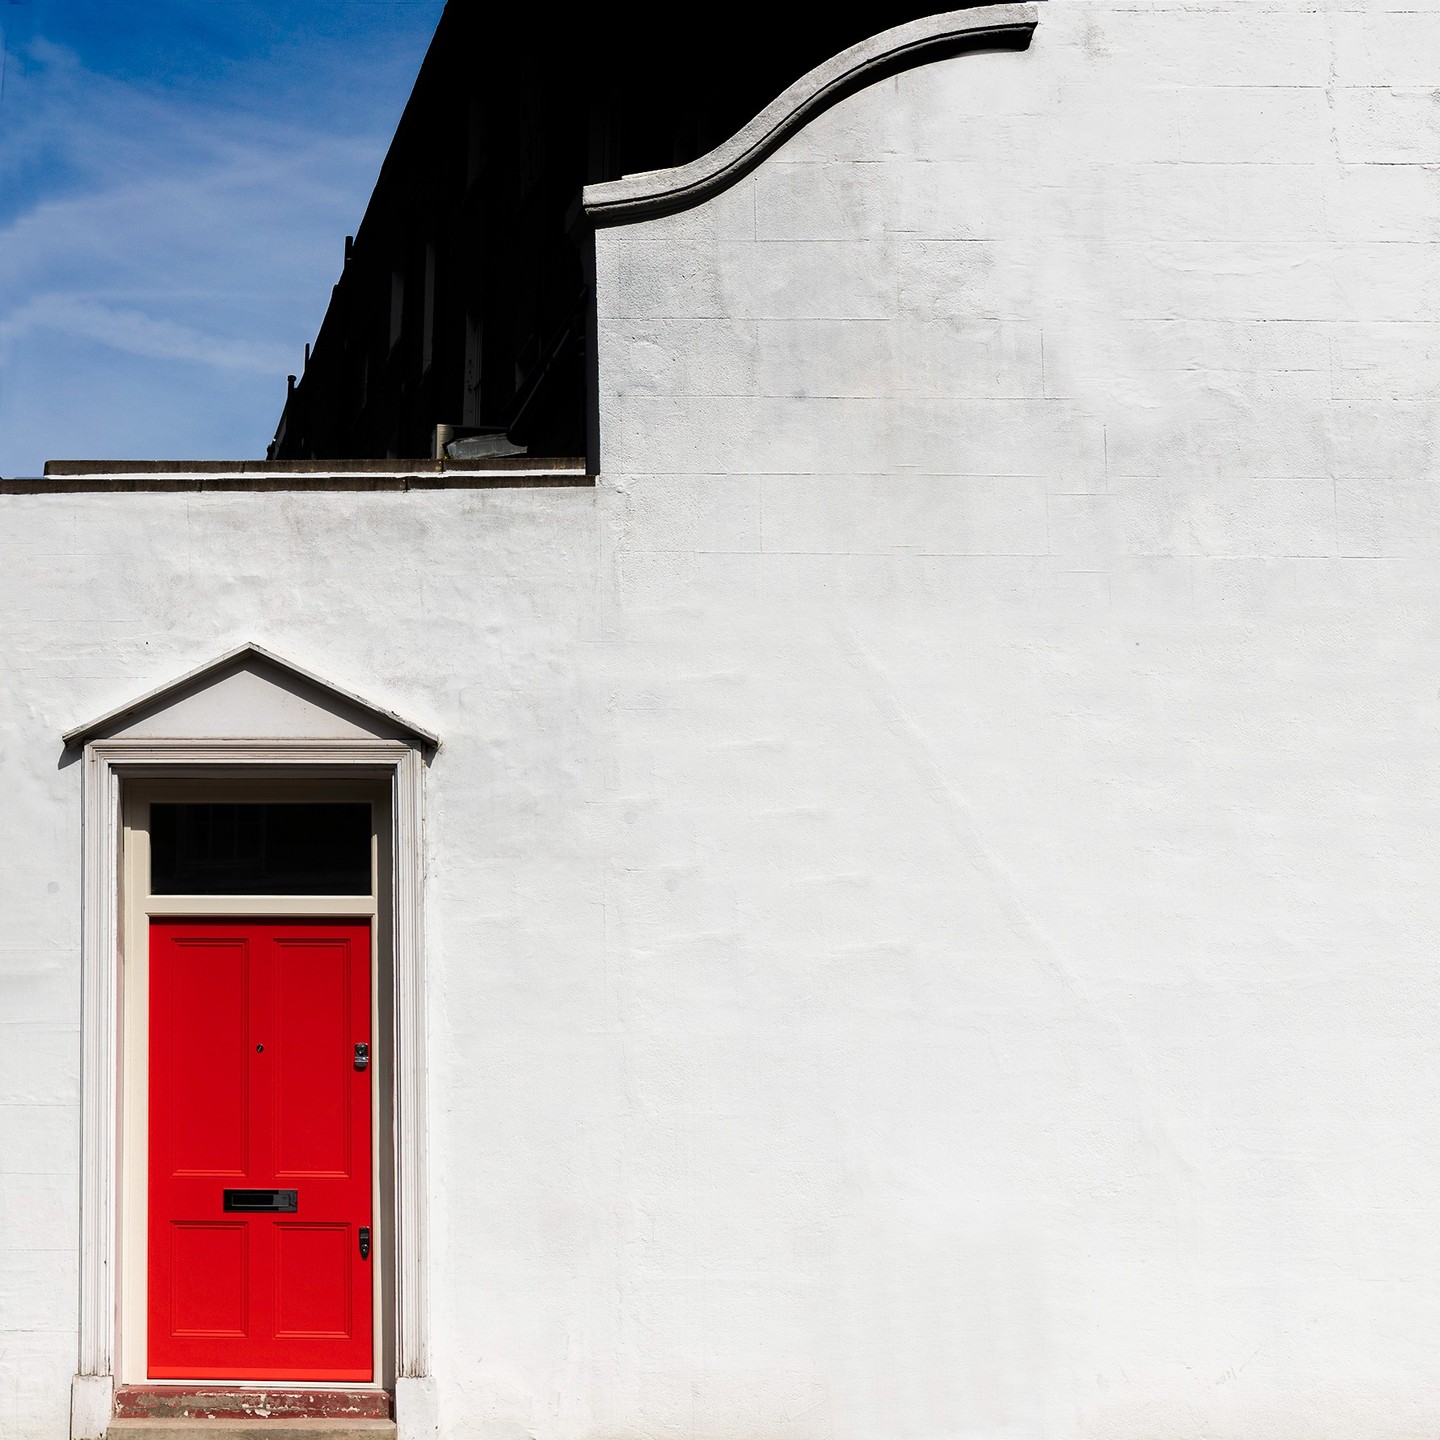 Red door in London Kensington
#reddoor #photographyserviceslondon #londonphotographer #photographers